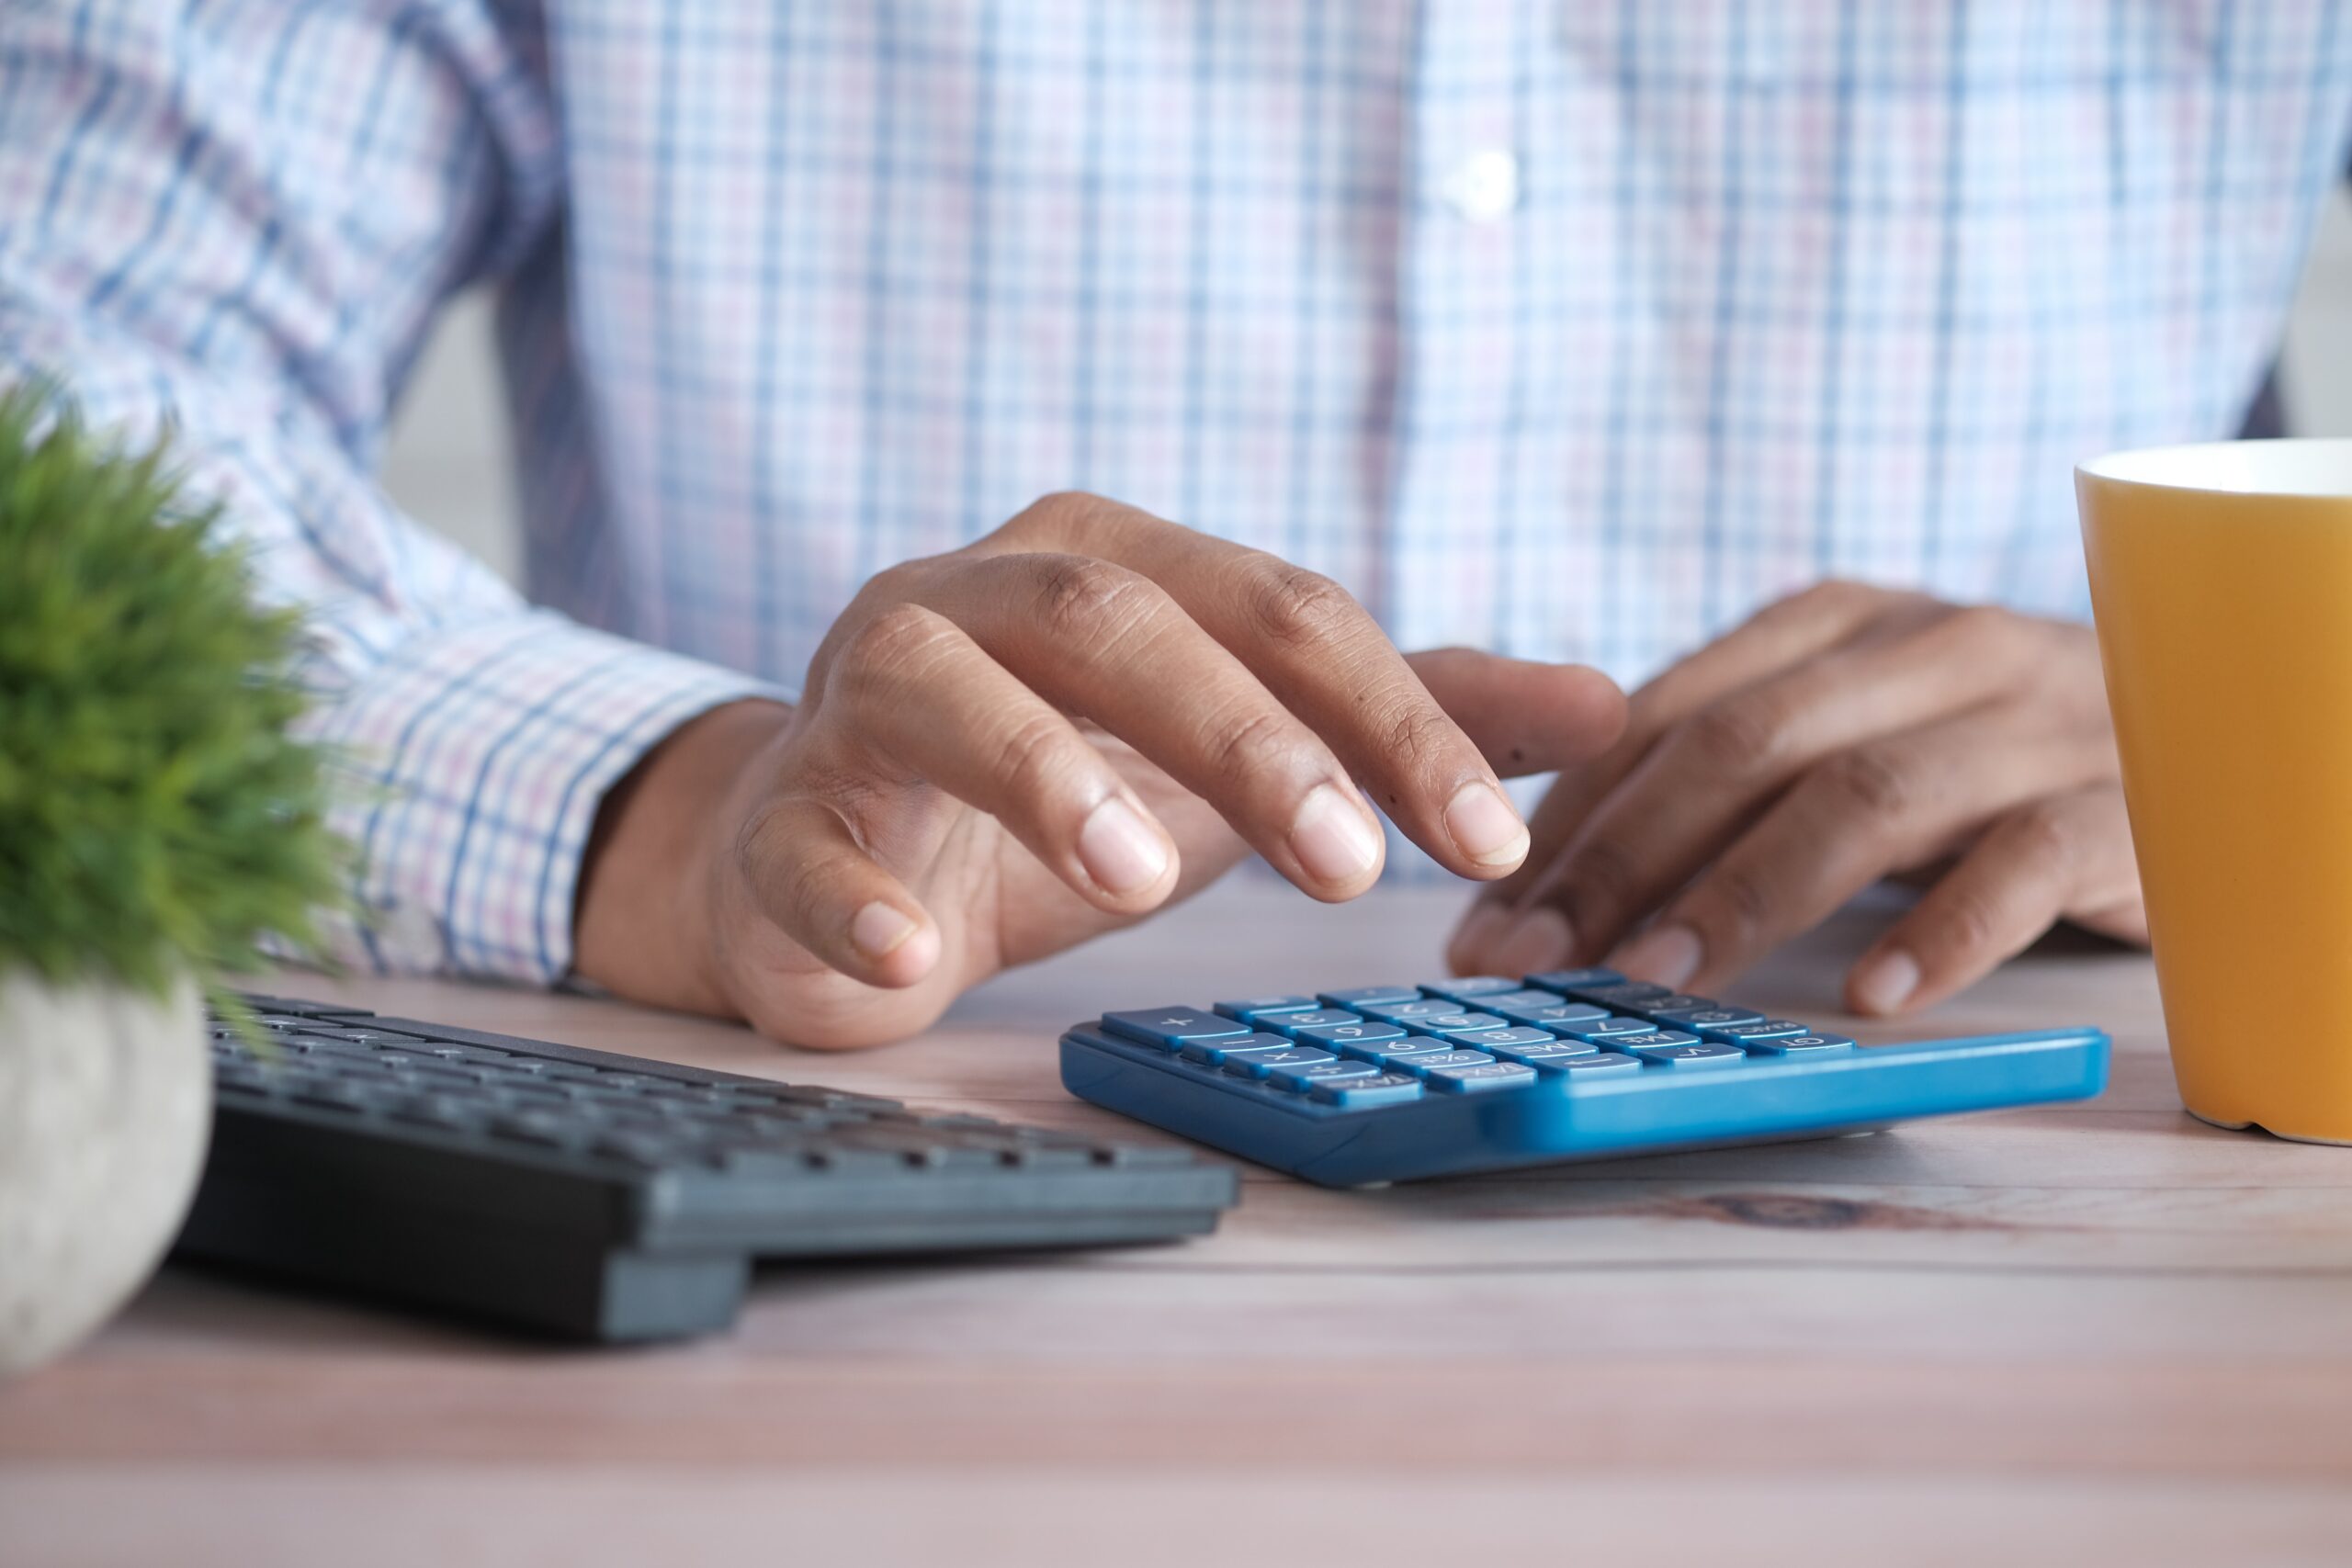 Person using a calculator on a desk